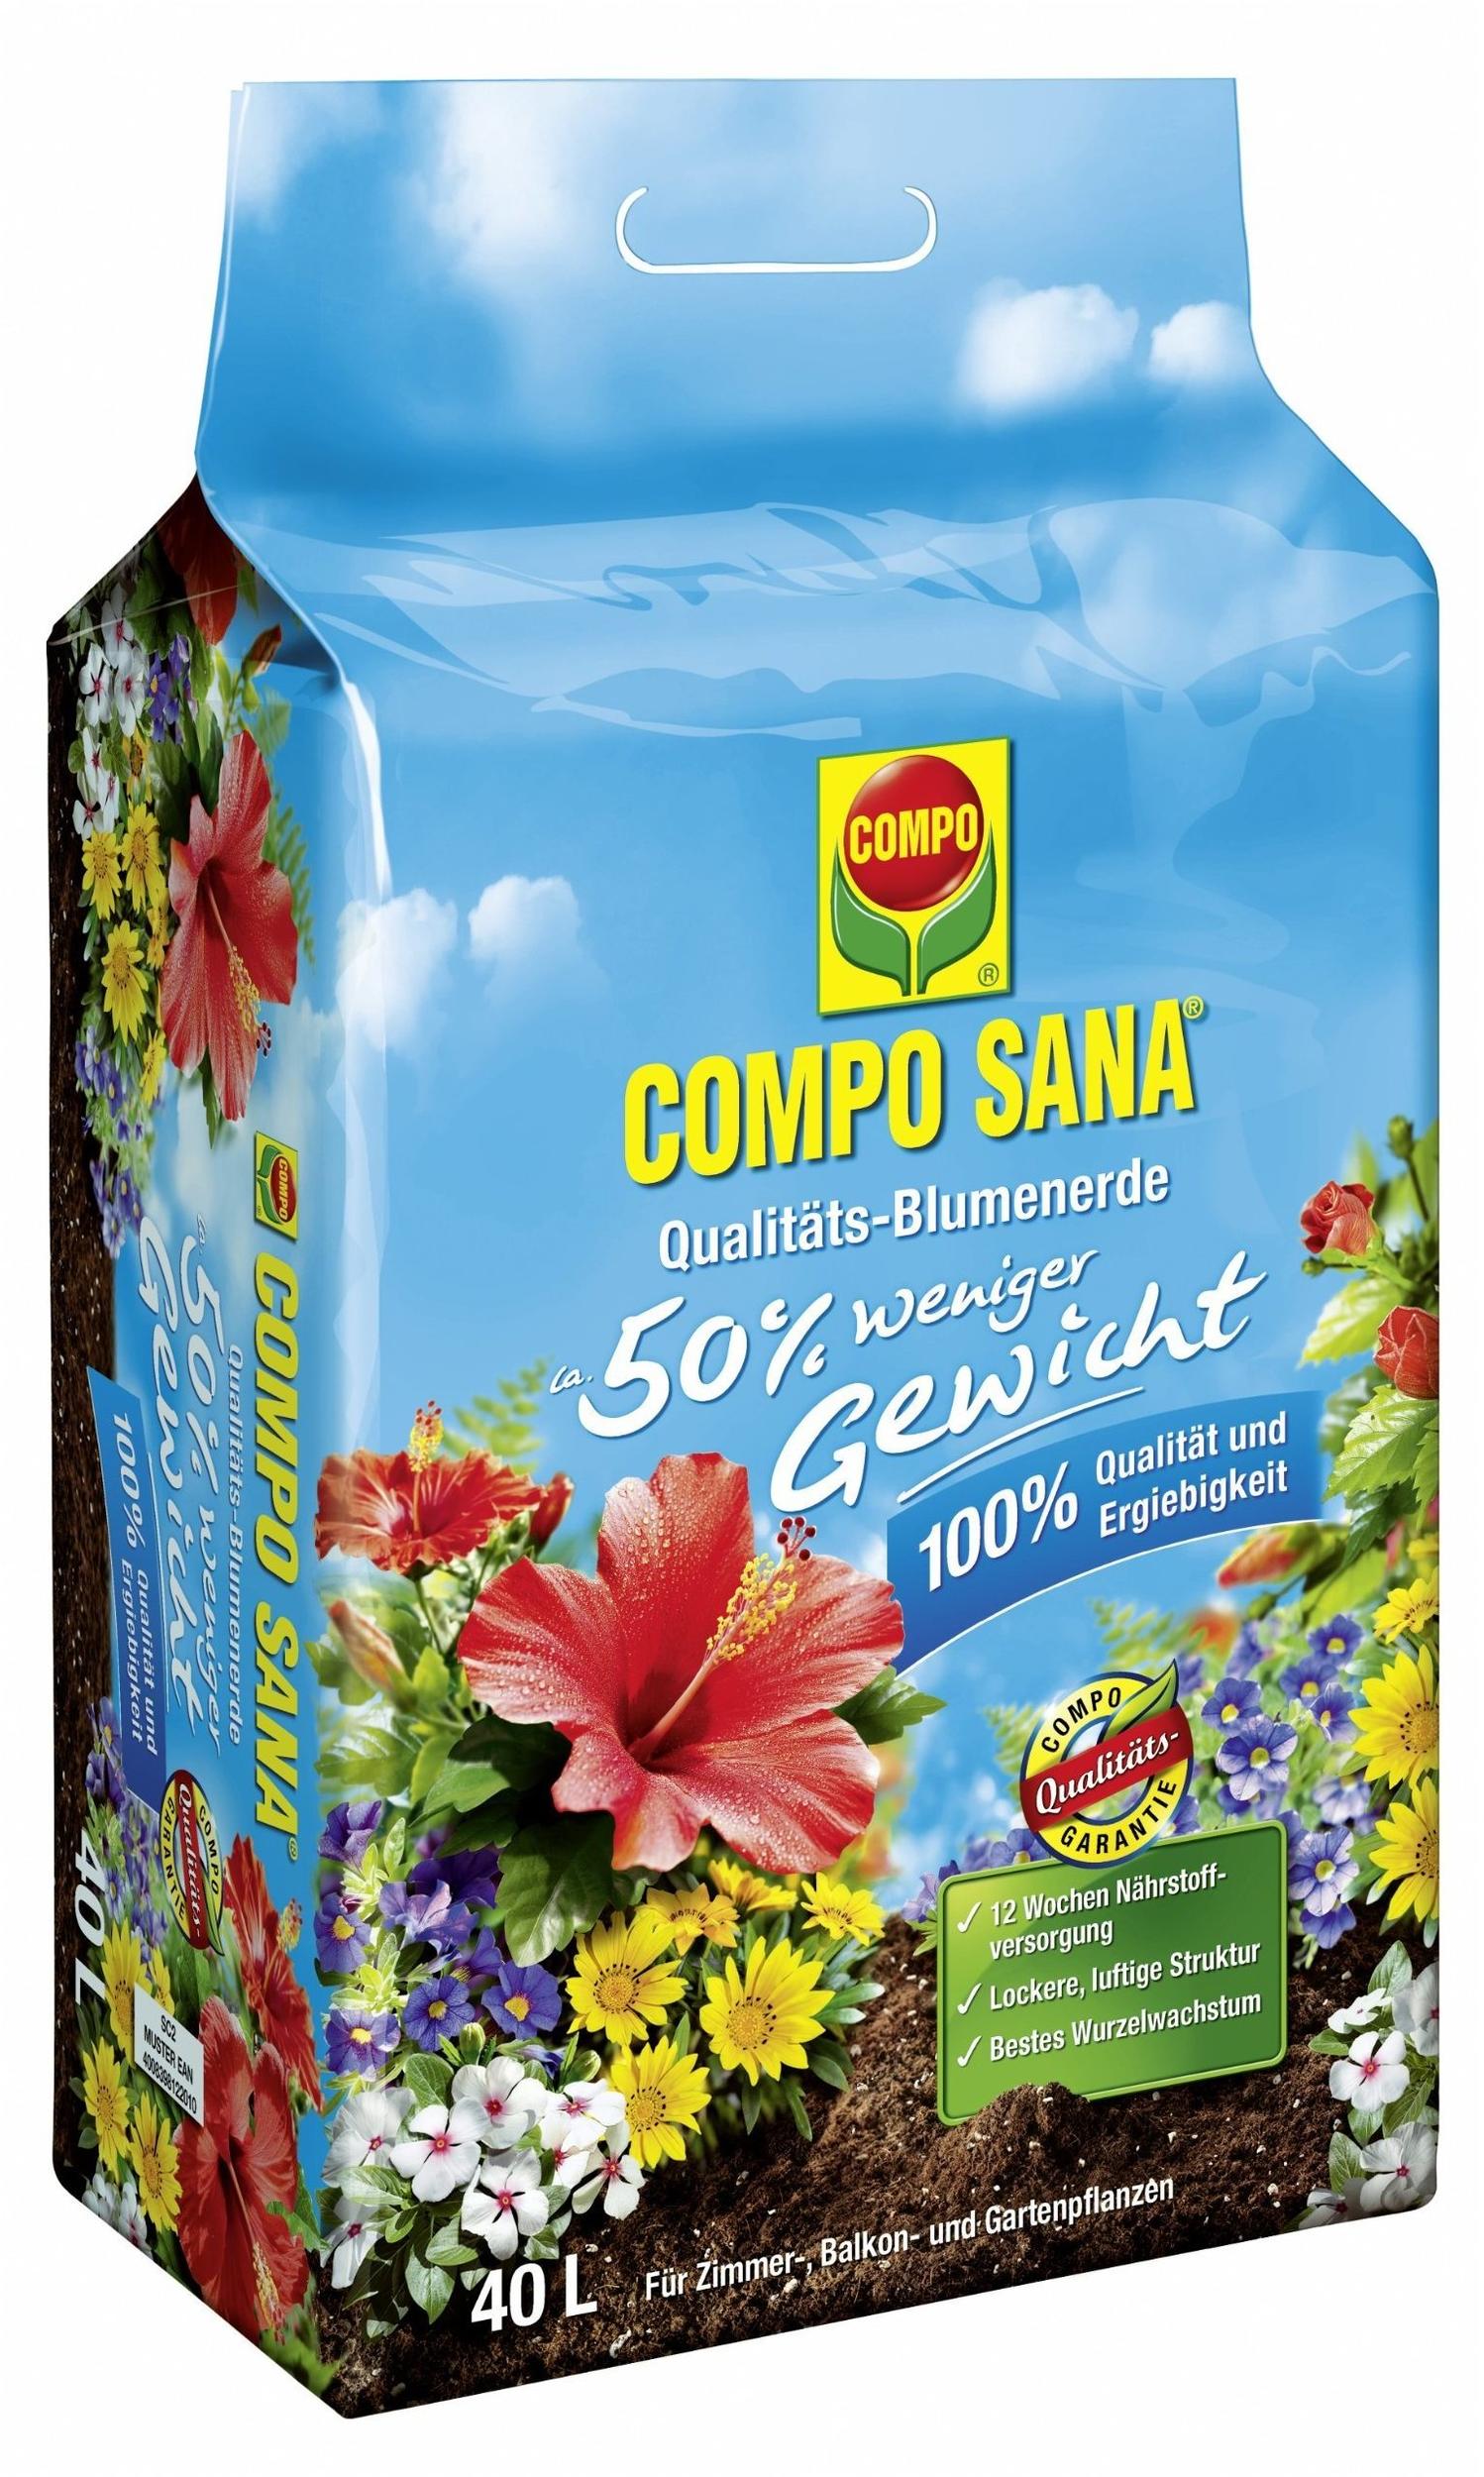 COMPO Sana Qualitäts-Blumenerde (50% weniger Gewicht) 40 Liter Test - ❤️  Testbericht.de Juni 2022